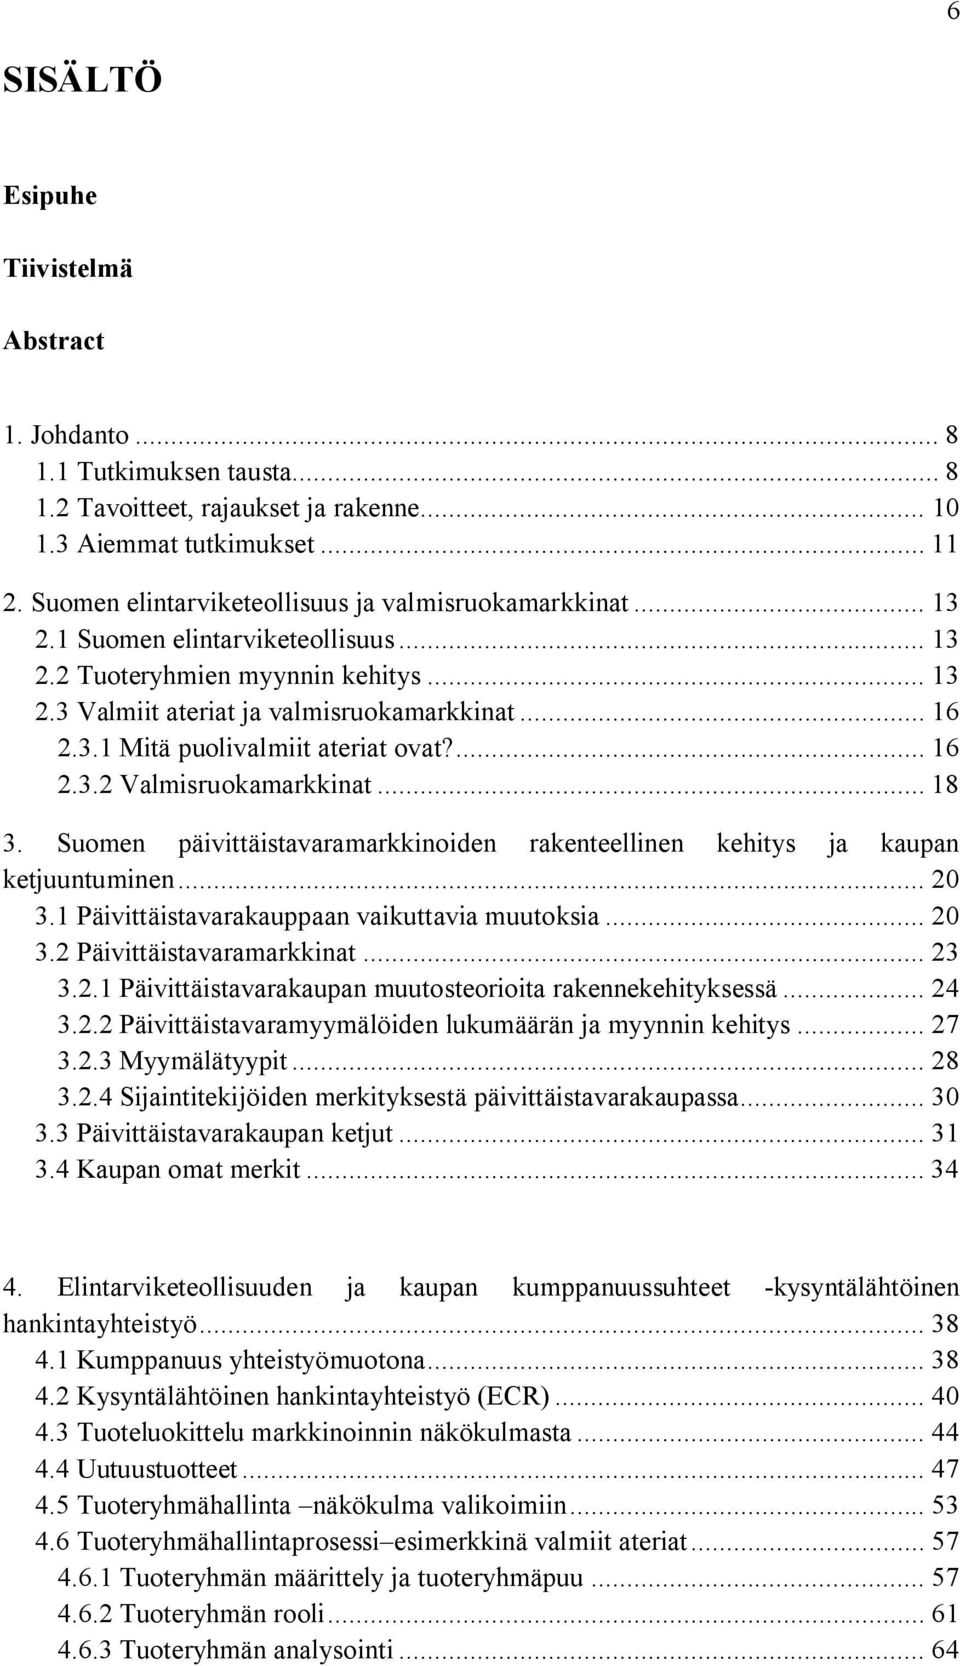 ... 16 2.3.2 Valmisruokamarkkinat... 18 3. Suomen päivittäistavaramarkkinoiden rakenteellinen kehitys ja kaupan ketjuuntuminen... 20 3.1 Päivittäistavarakauppaan vaikuttavia muutoksia... 20 3.2 Päivittäistavaramarkkinat.